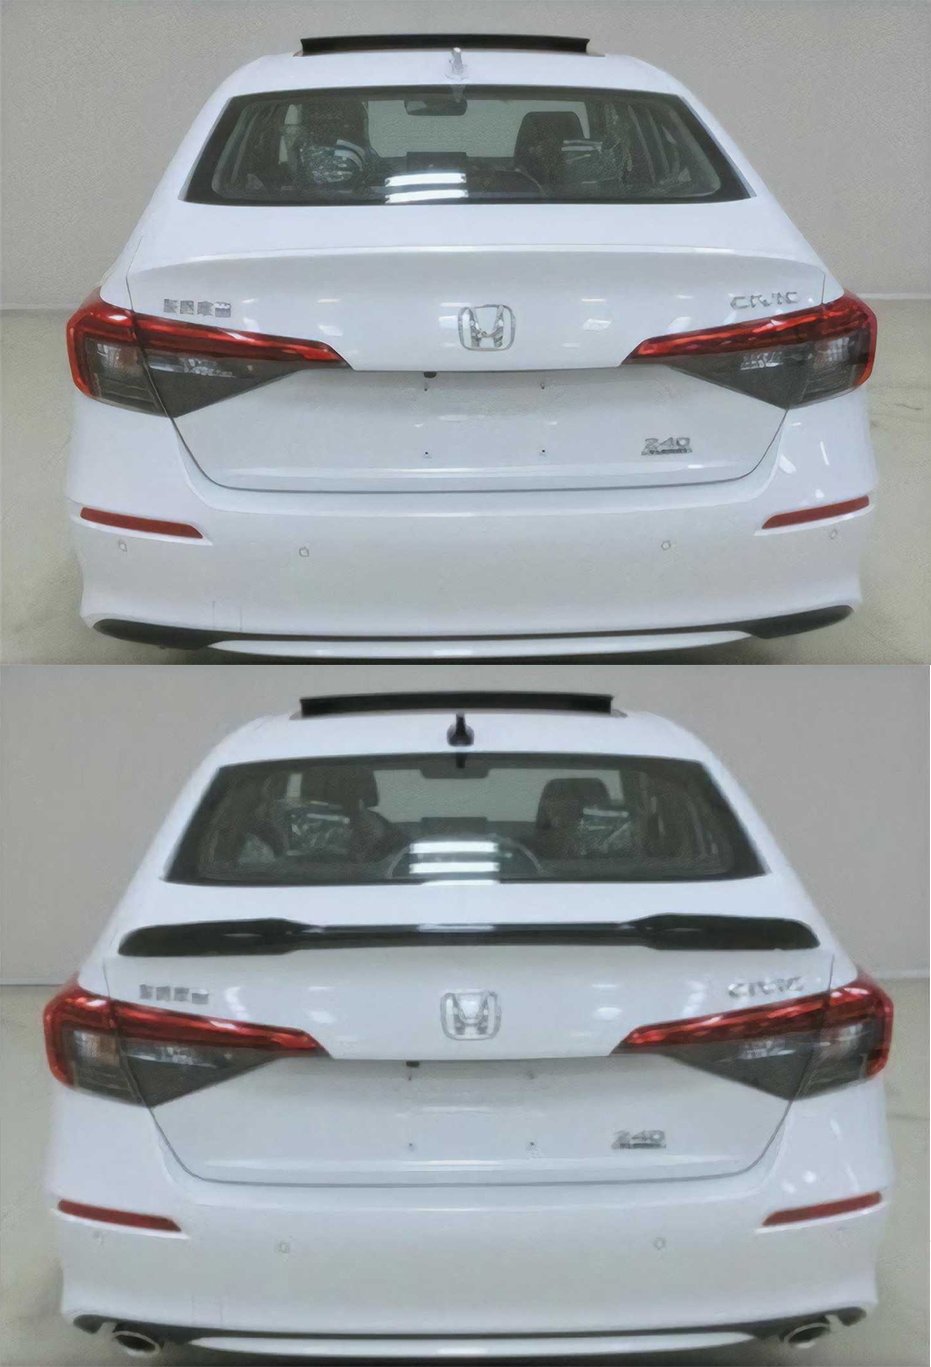 Honda Civic sedan lộ diện bản thương mại tại Trung Quốc